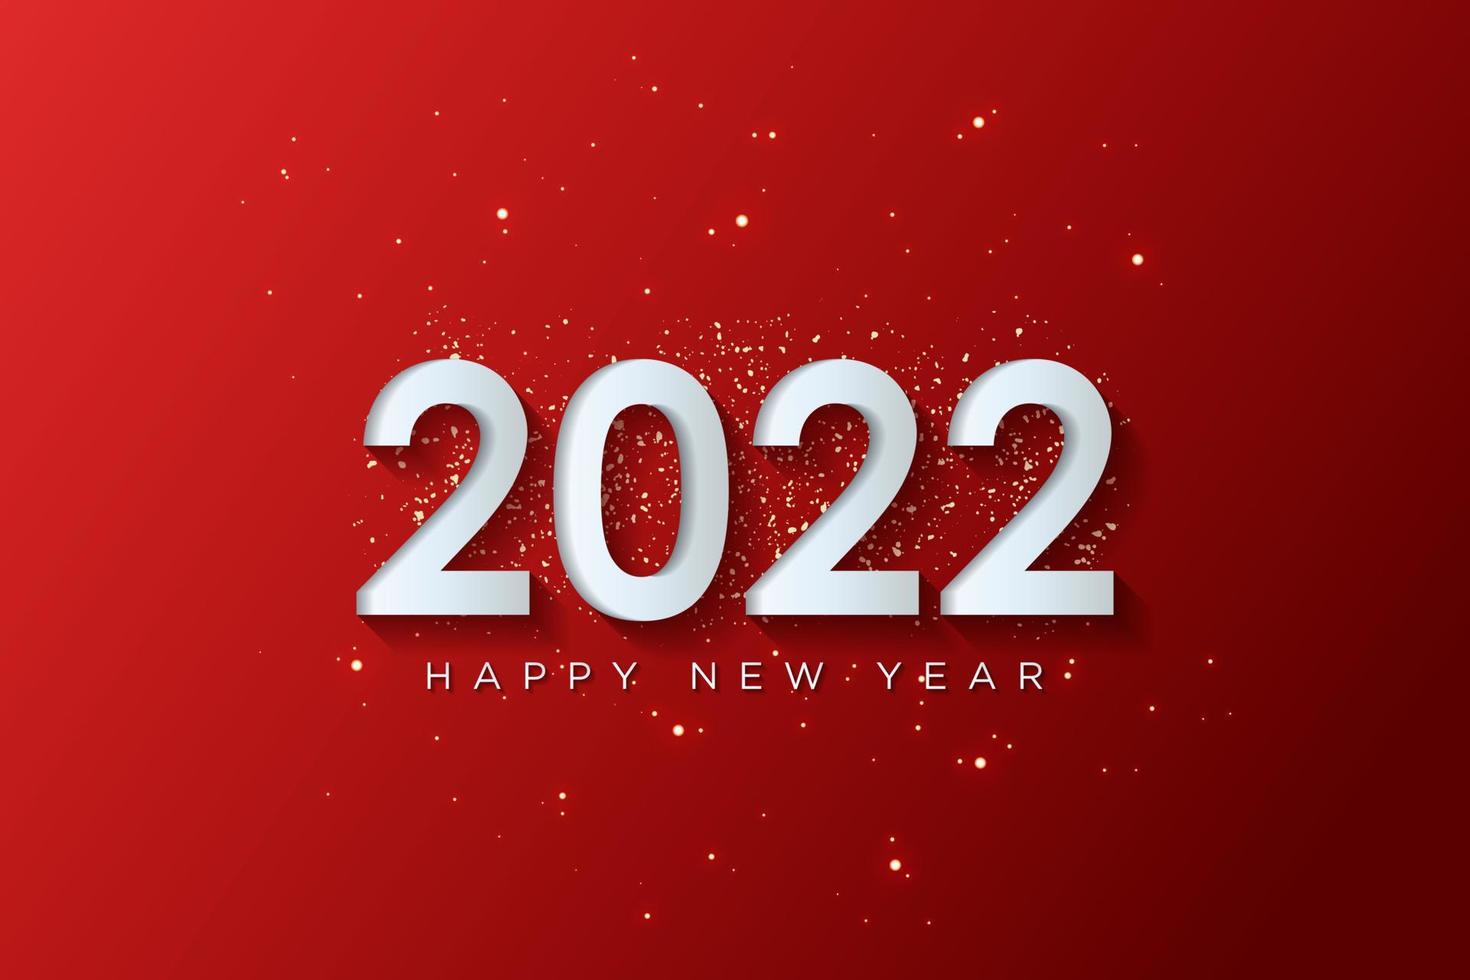 2022 gott nytt år gratulationskort med abstrakt bakgrundsdesign för gratulationskort, affisch, banner. vektor illustration.